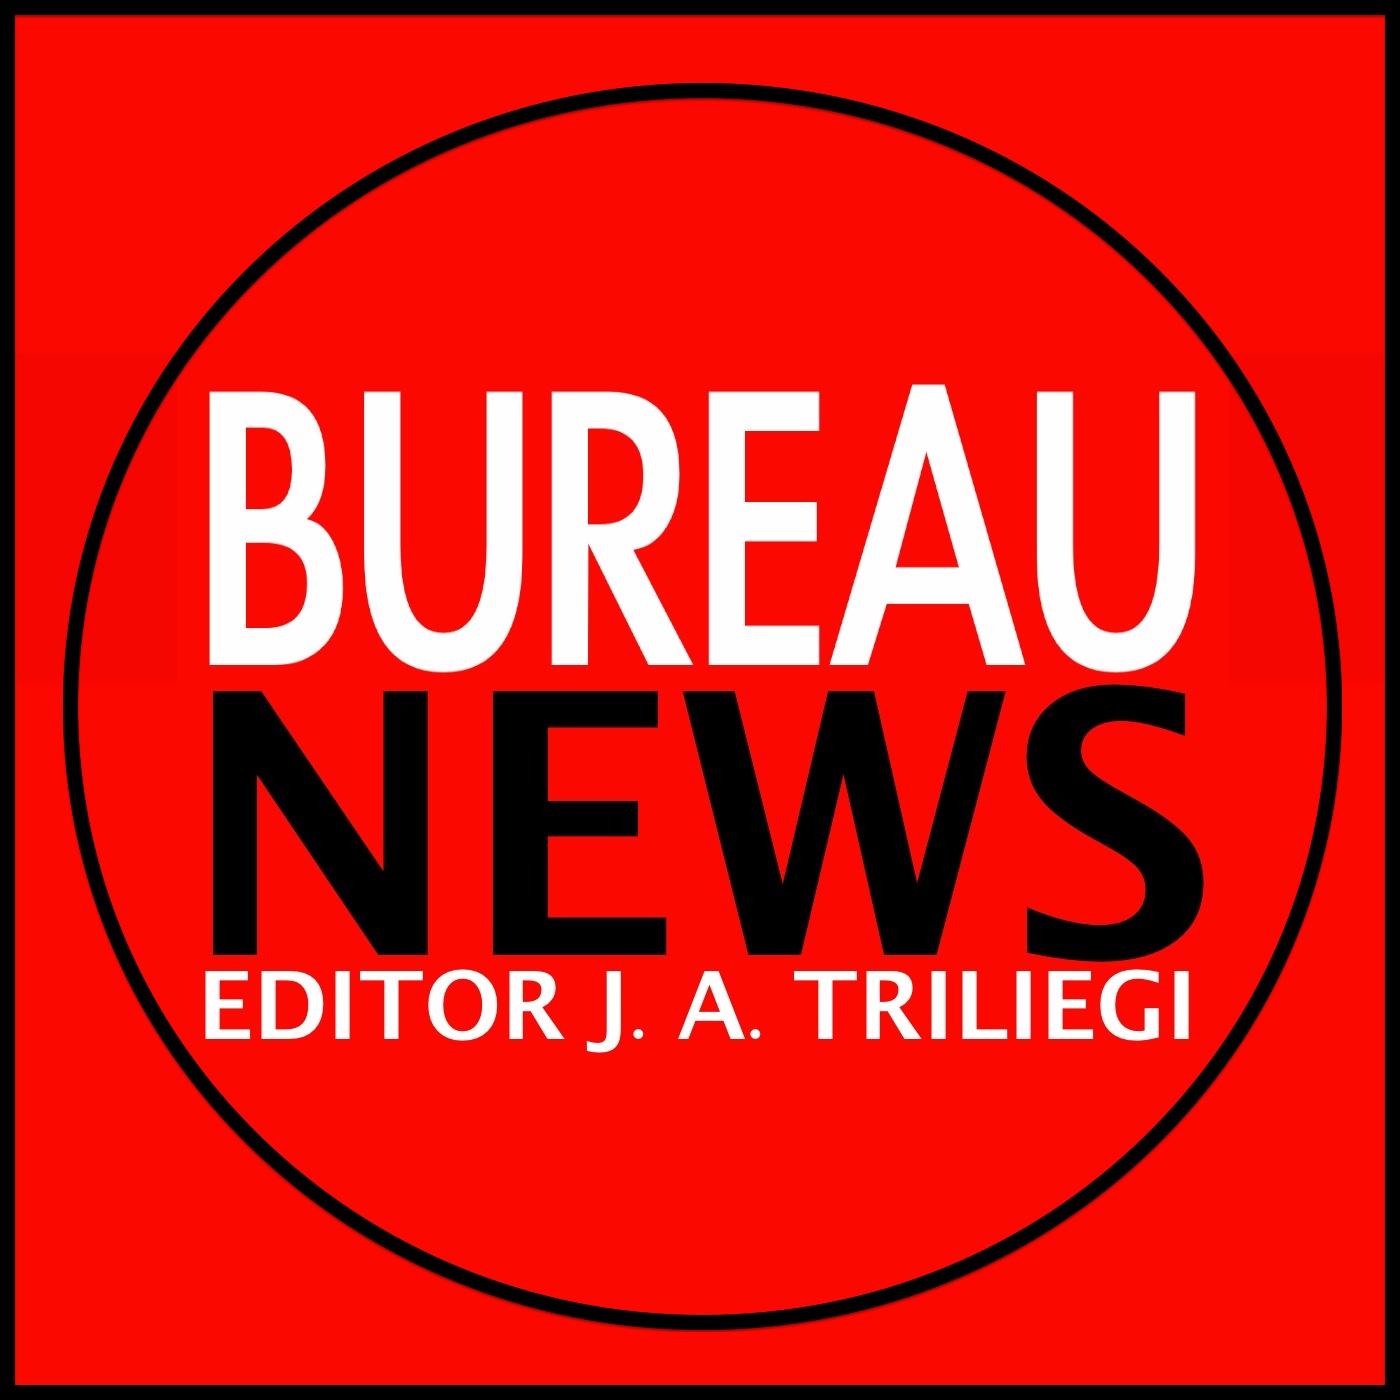 VISIT THE BUREAU NEWS SITE